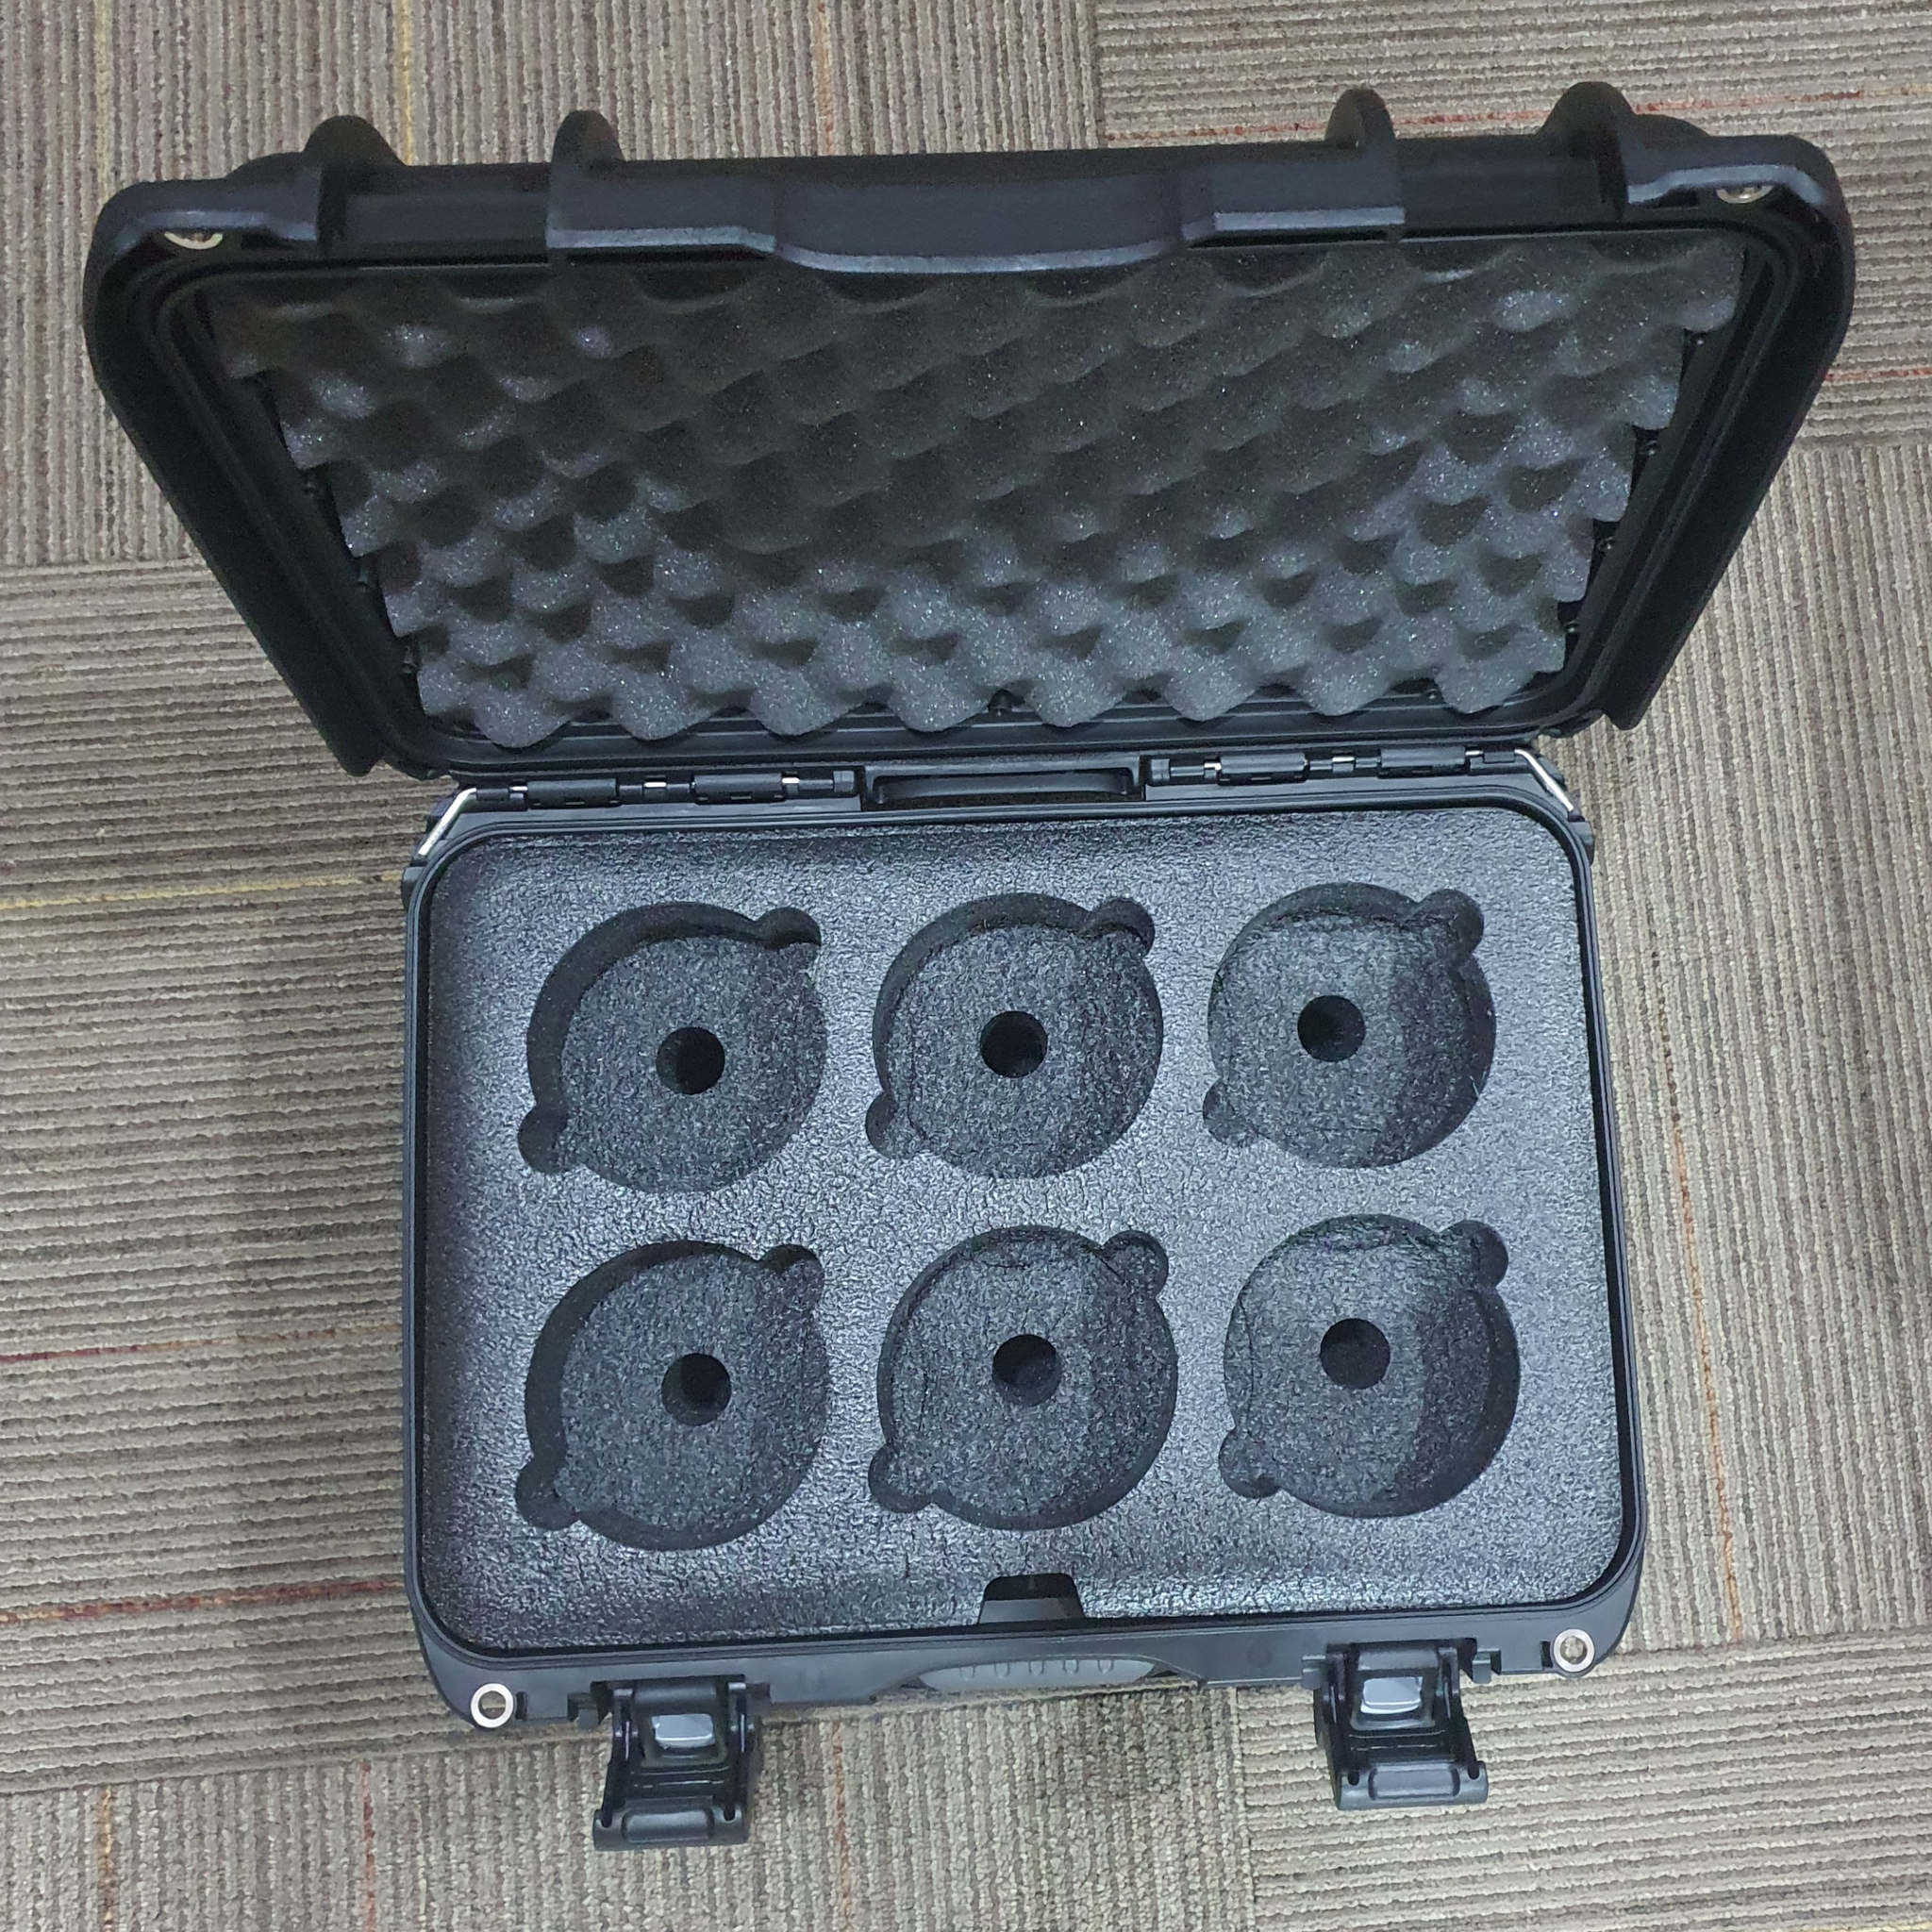 Samyang VDSLR MK2 6 Lens Kit - 14,24,35,50,85,135mm (FOC MK2 Hardcase)-Camera Lenses-futuromic